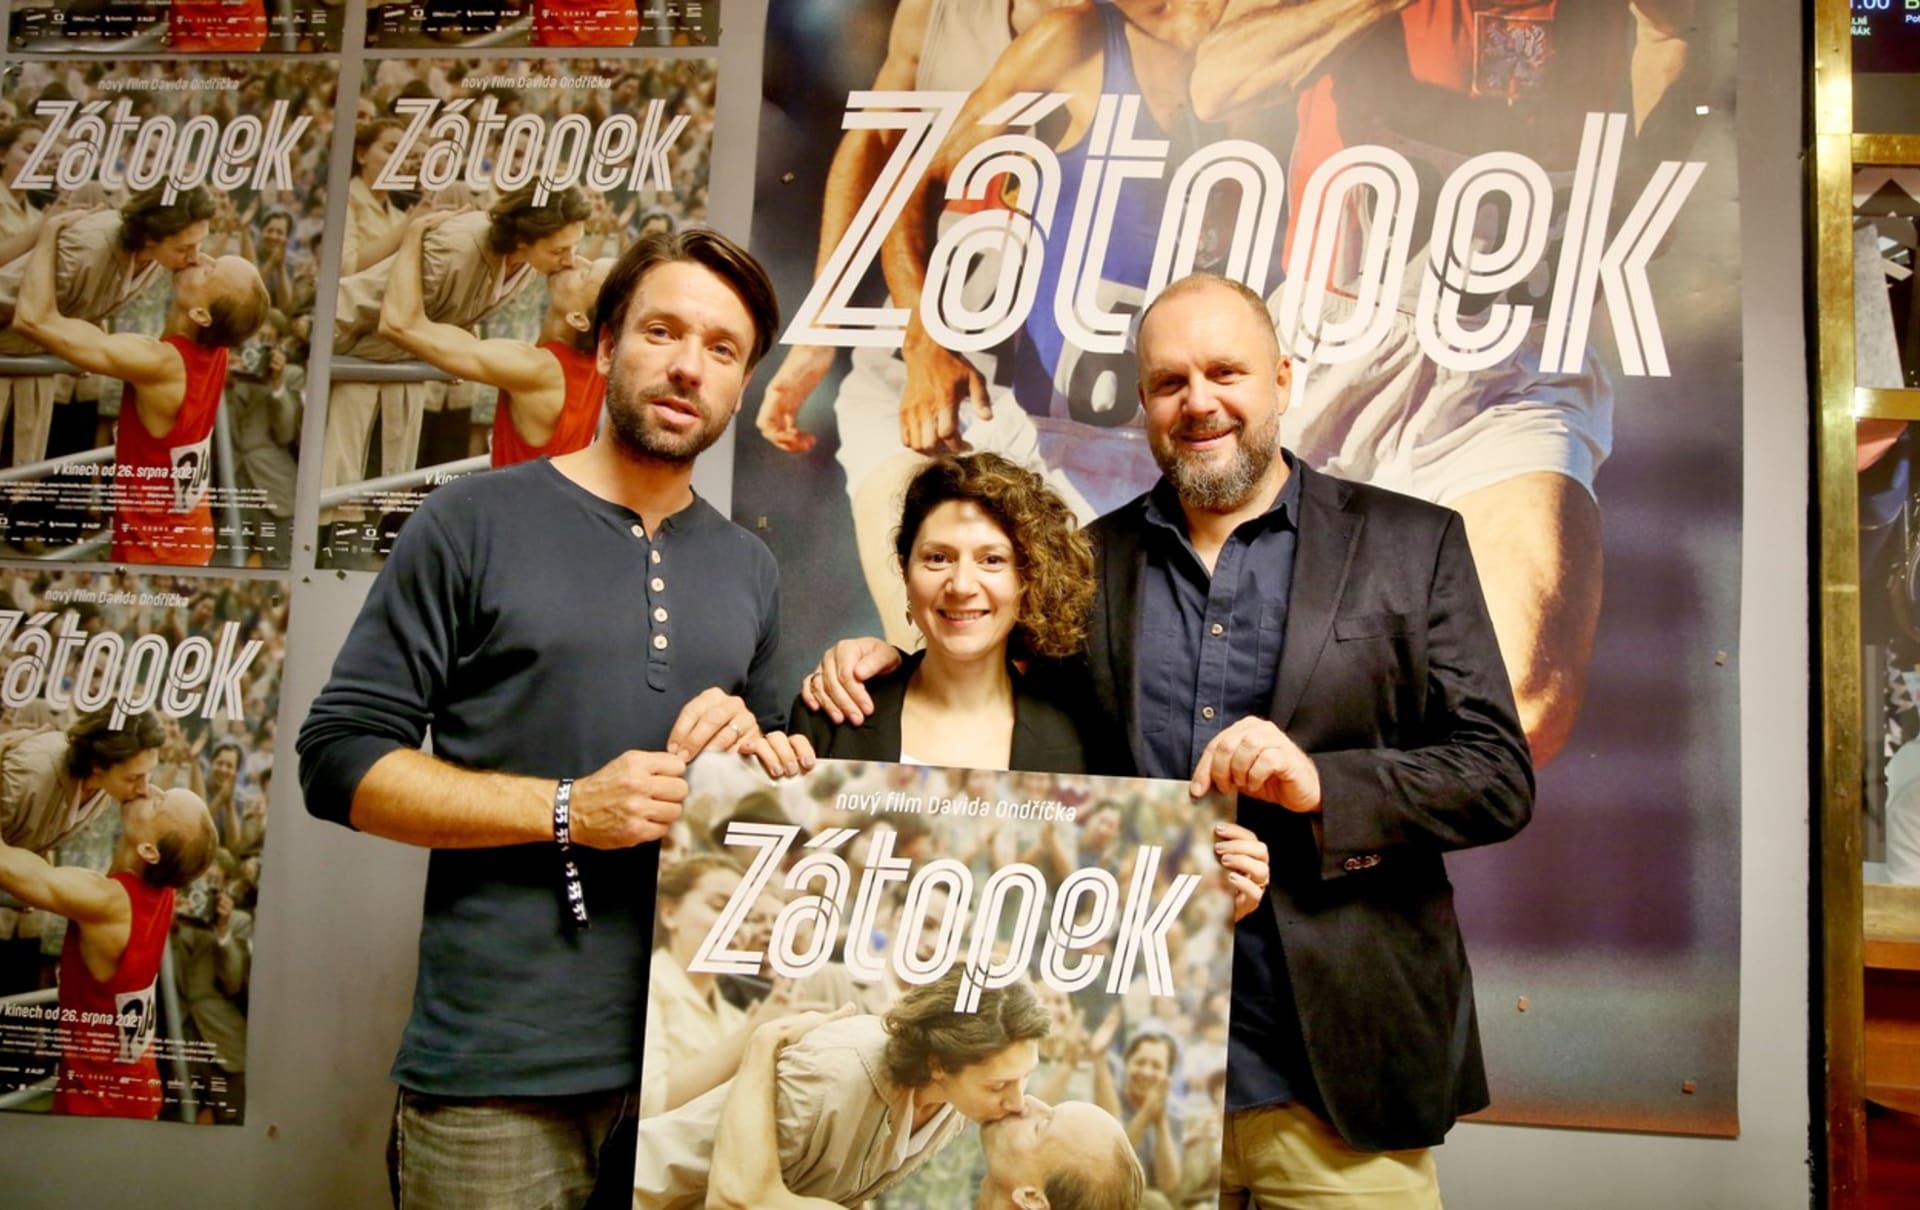 V Karlových Varech manželé Ondříčkovi představili film Zátopek, který David režíroval a Martha v něm hraje Danu Zátopkovou.